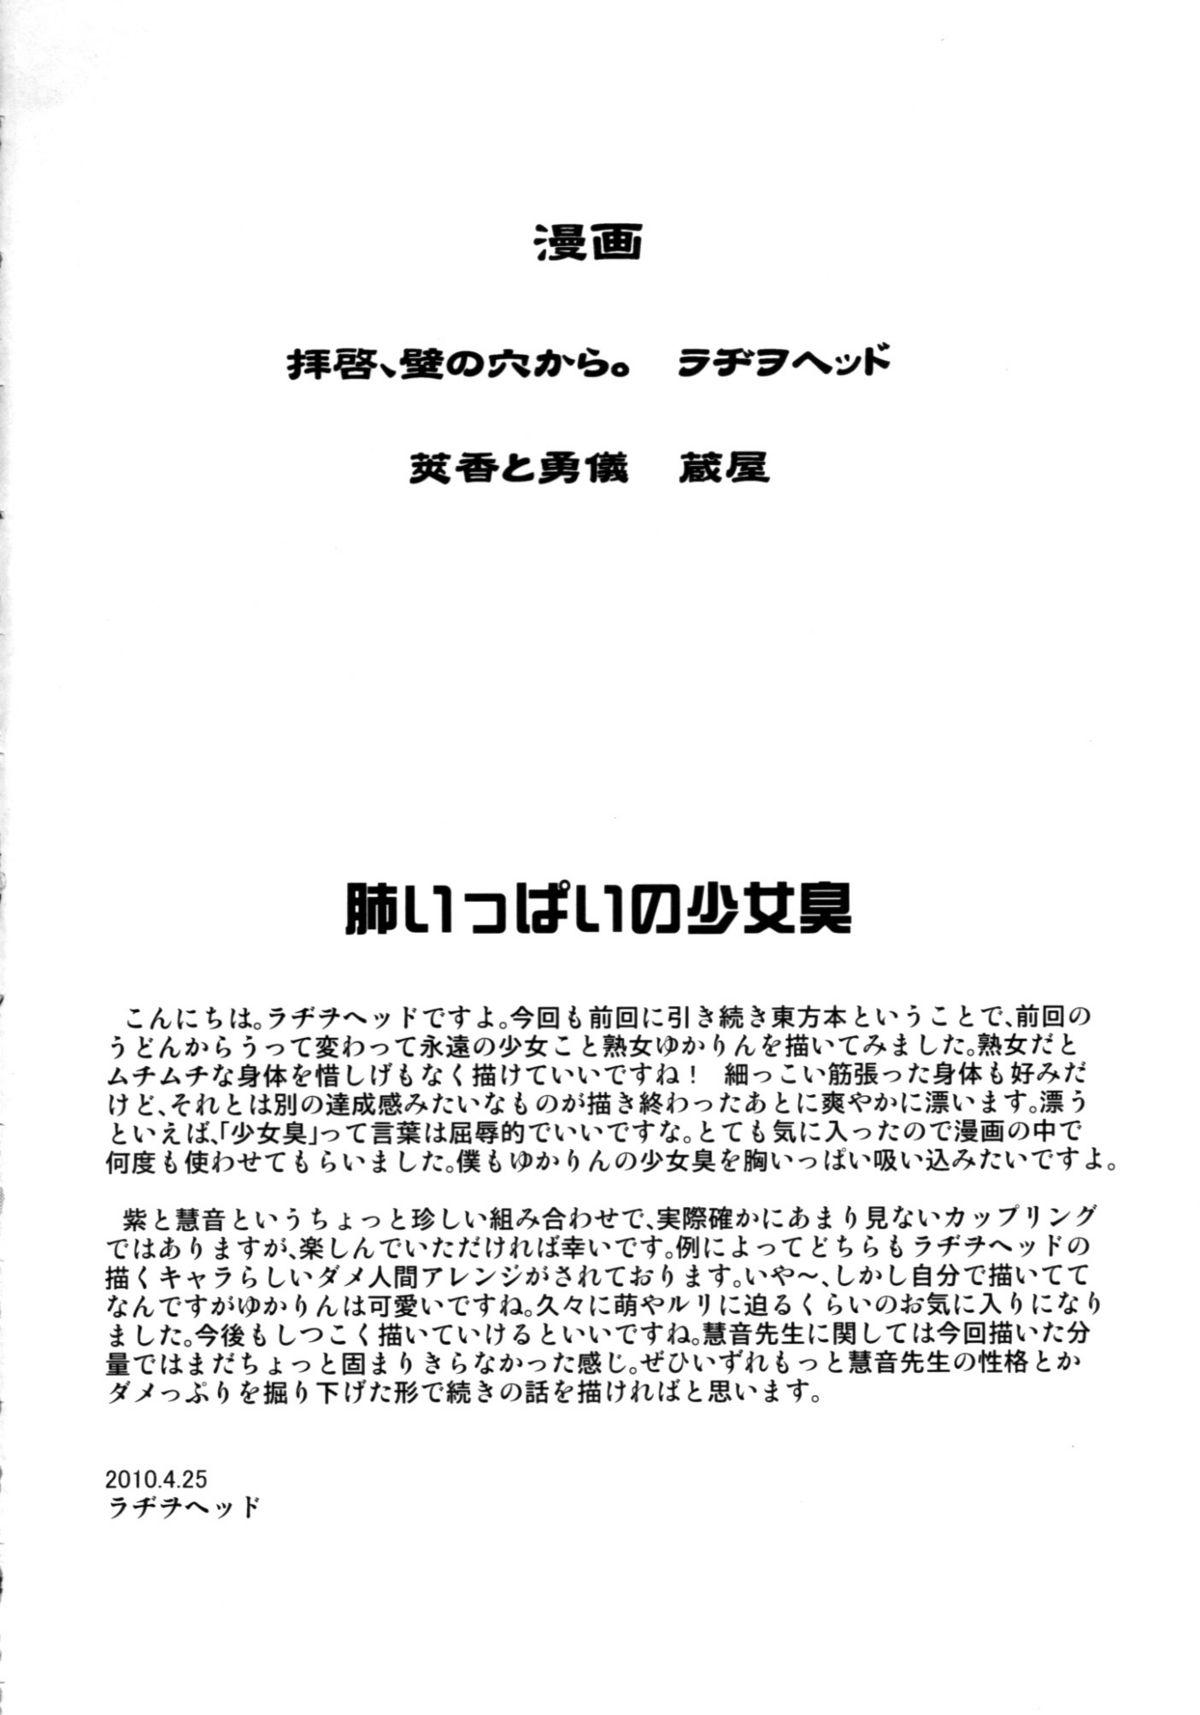 Spa Haikei, Kabe no Ana kara. - Touhou project Rica - Page 3